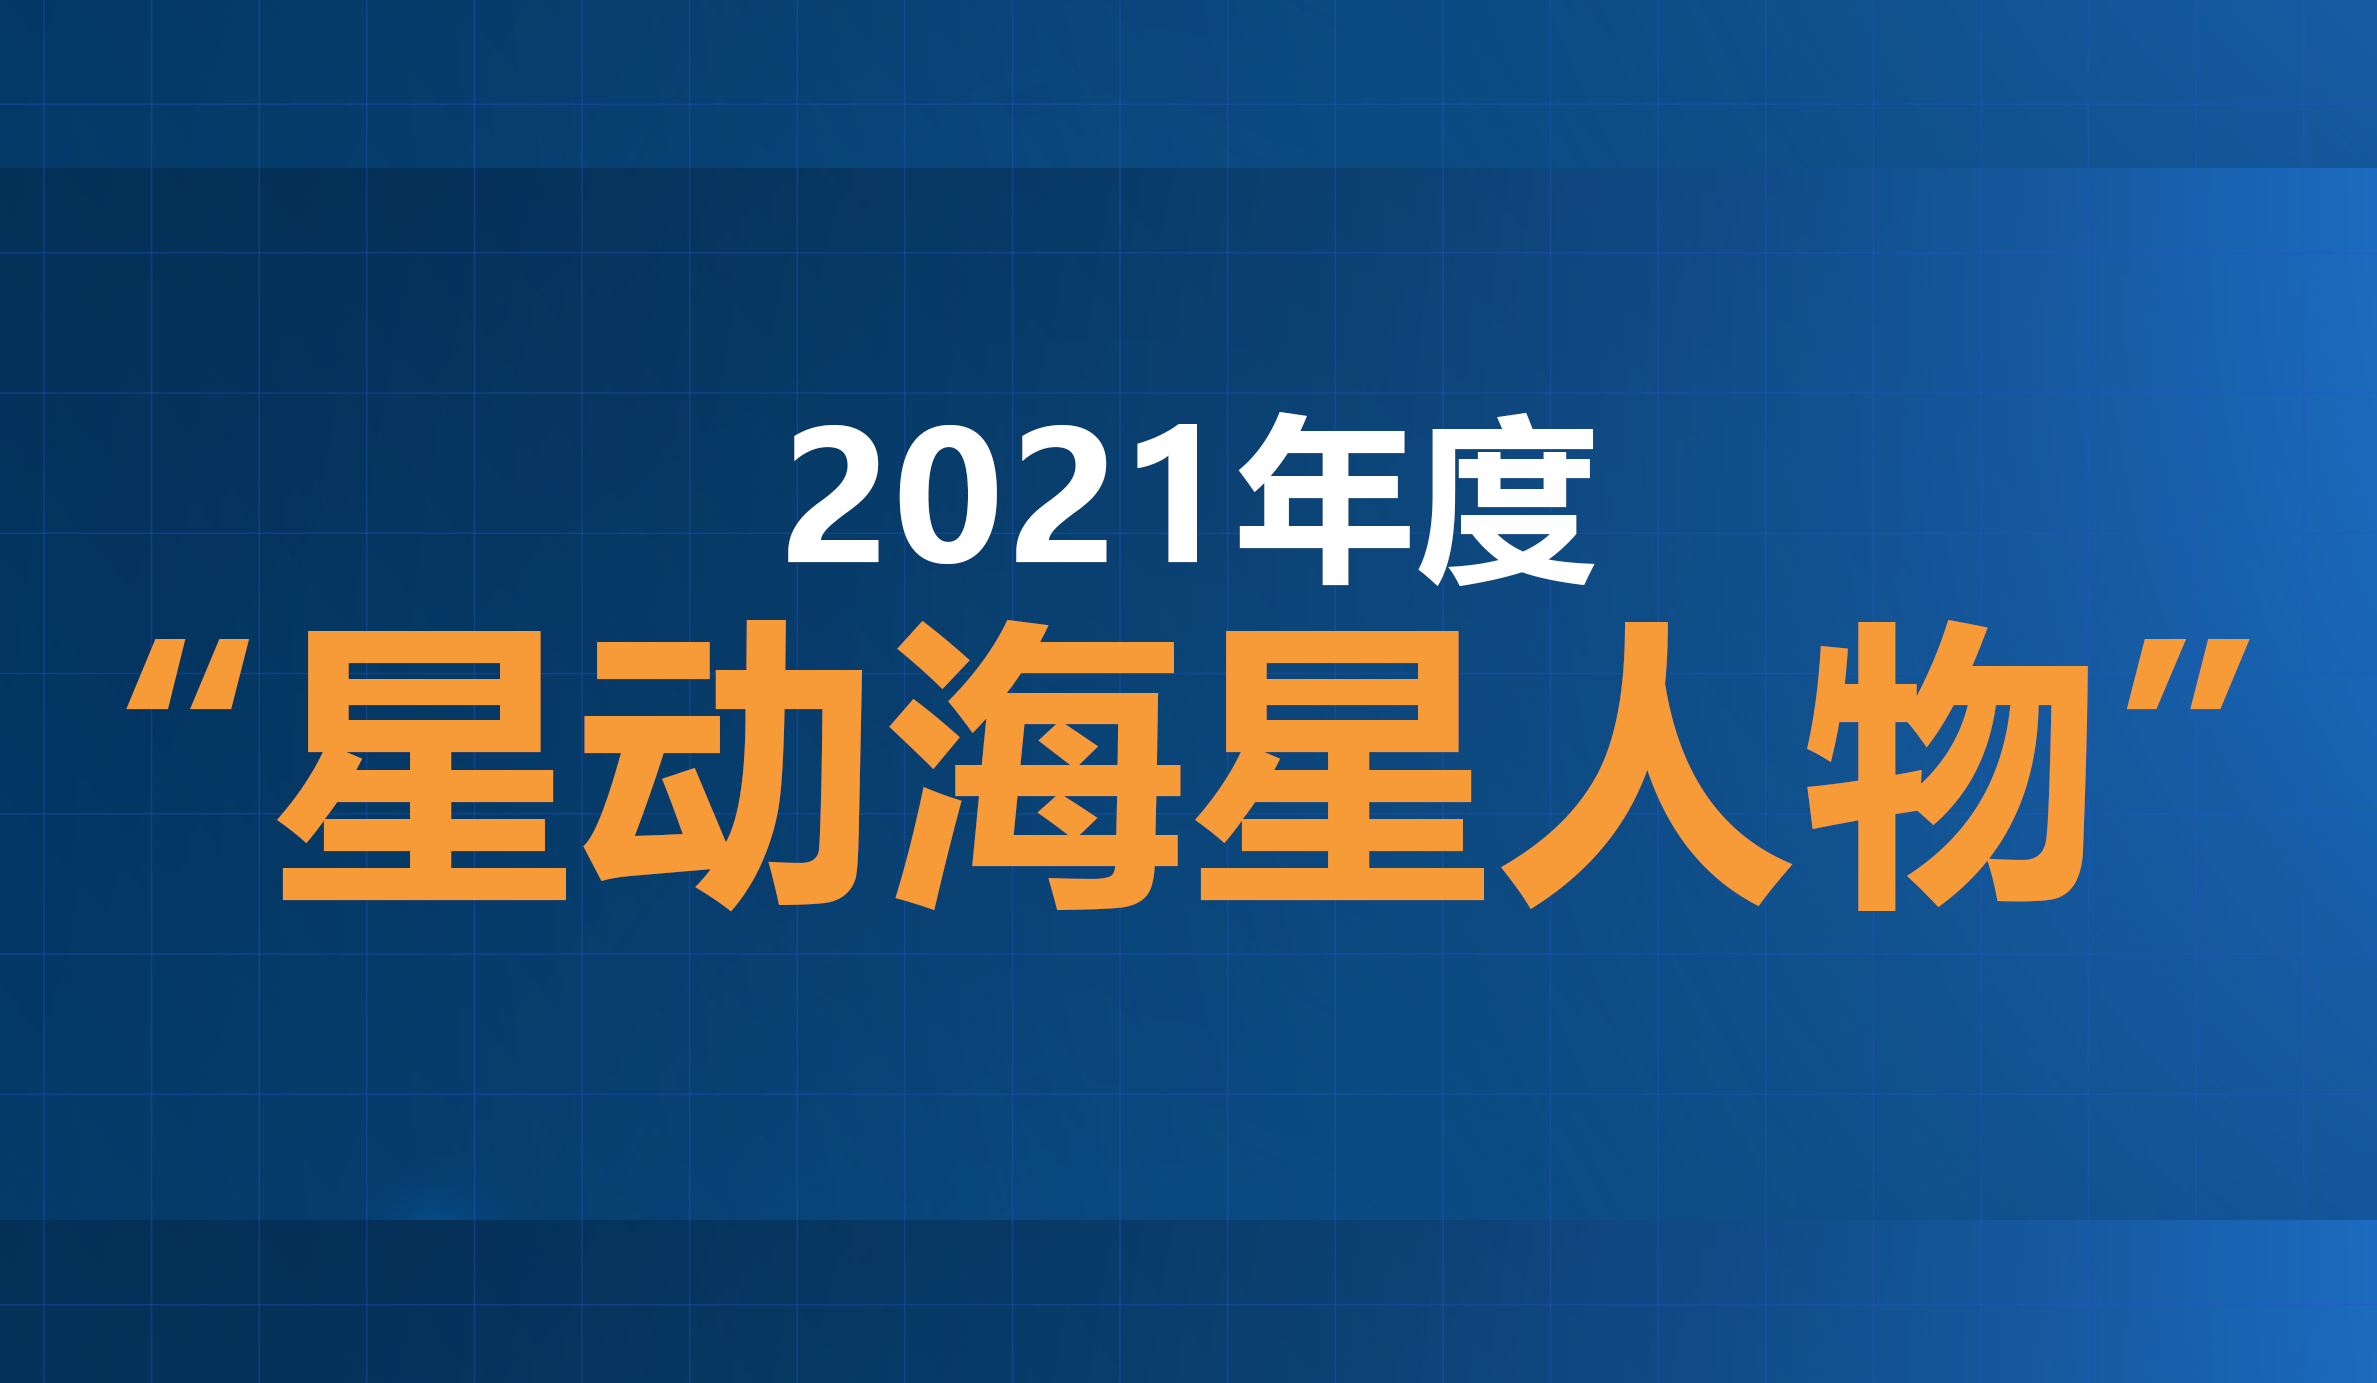 2021年度“星动海星人物”评选结果公示